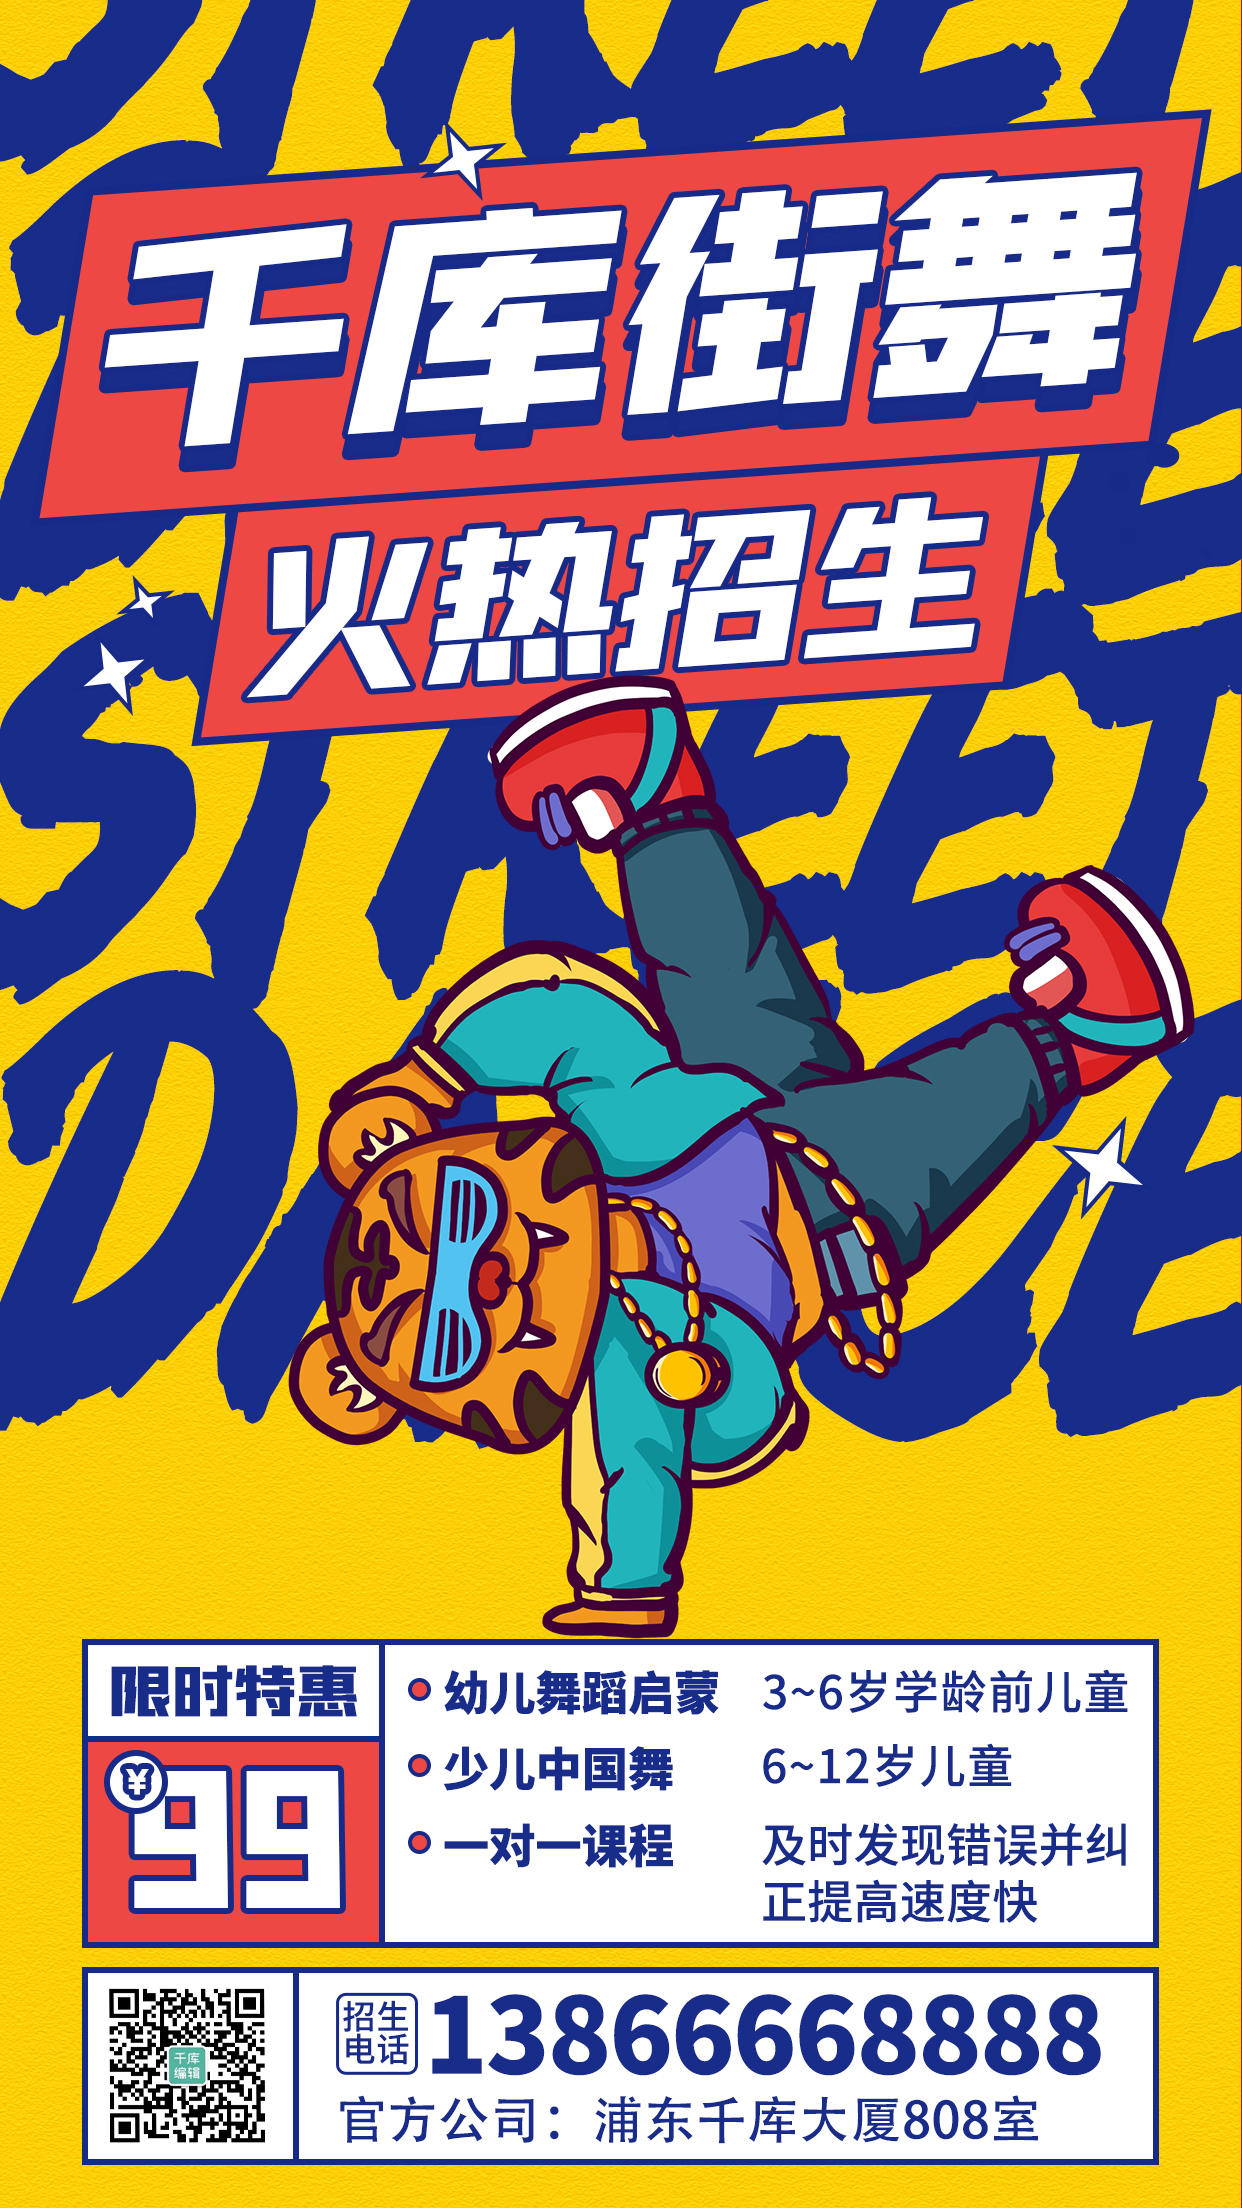 街舞班招生宣传黄色炫酷潮流海报图片